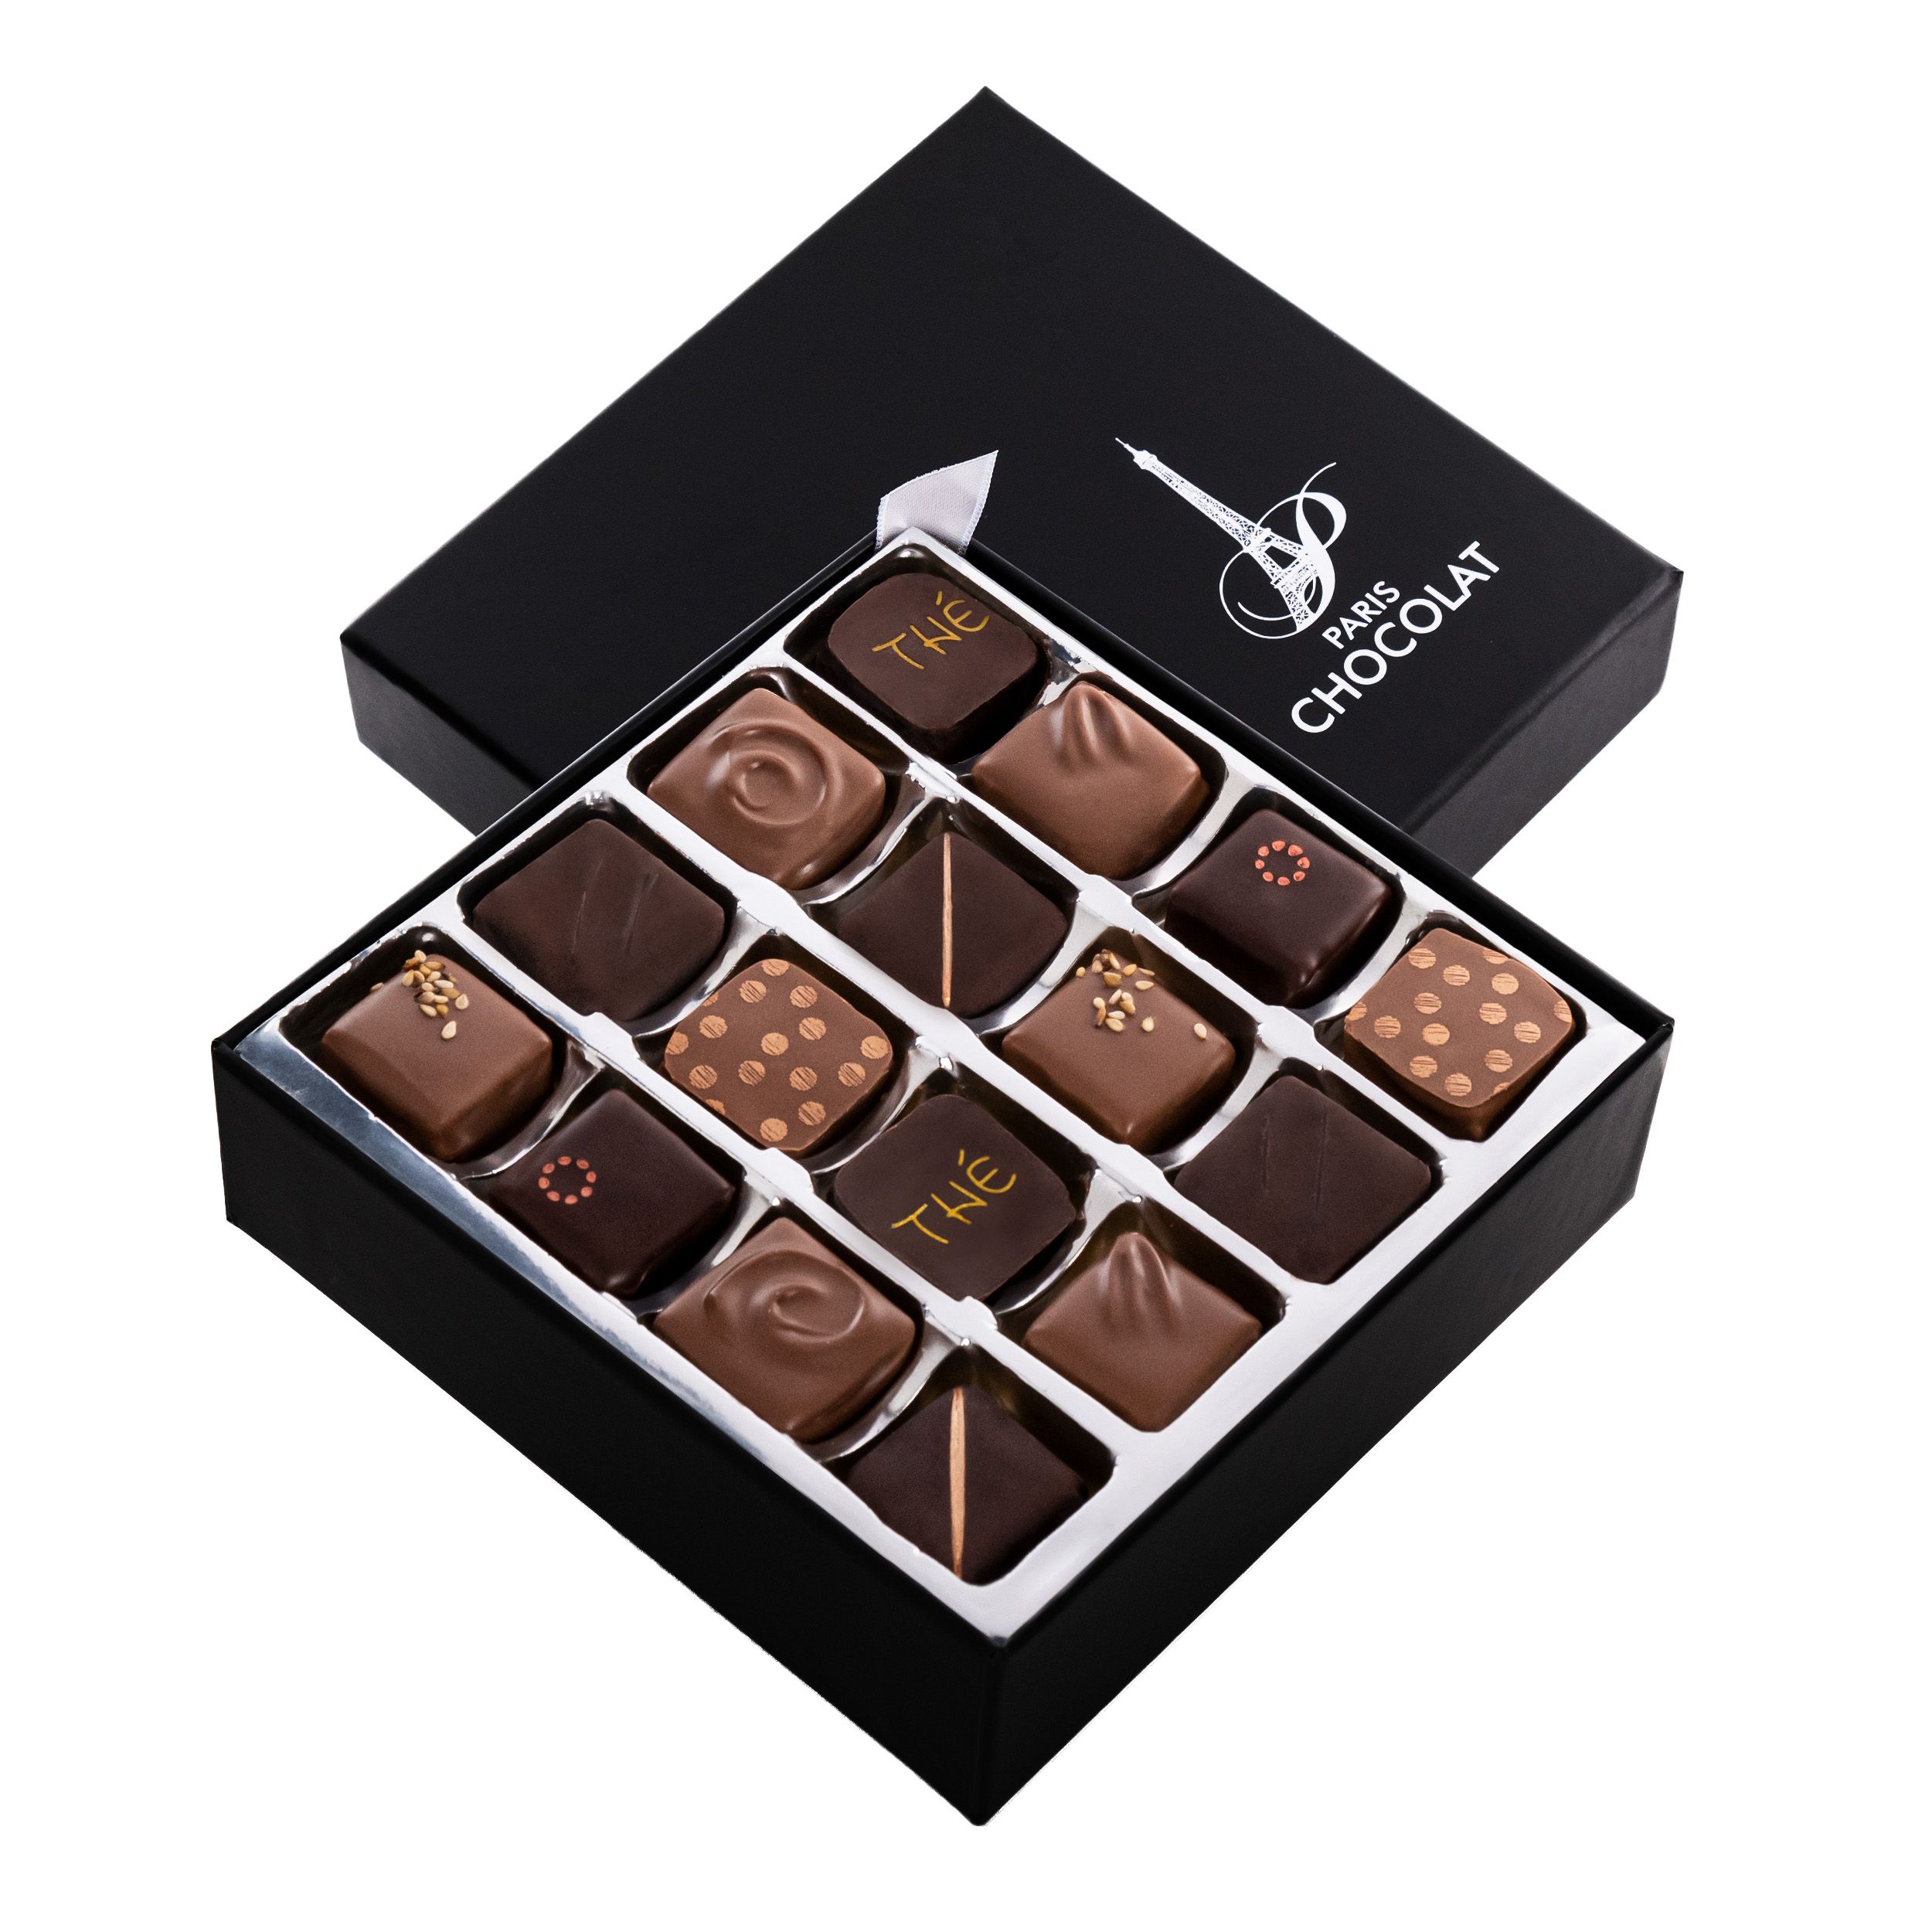 Paris Chocolat - Chocolaterie Artisanal